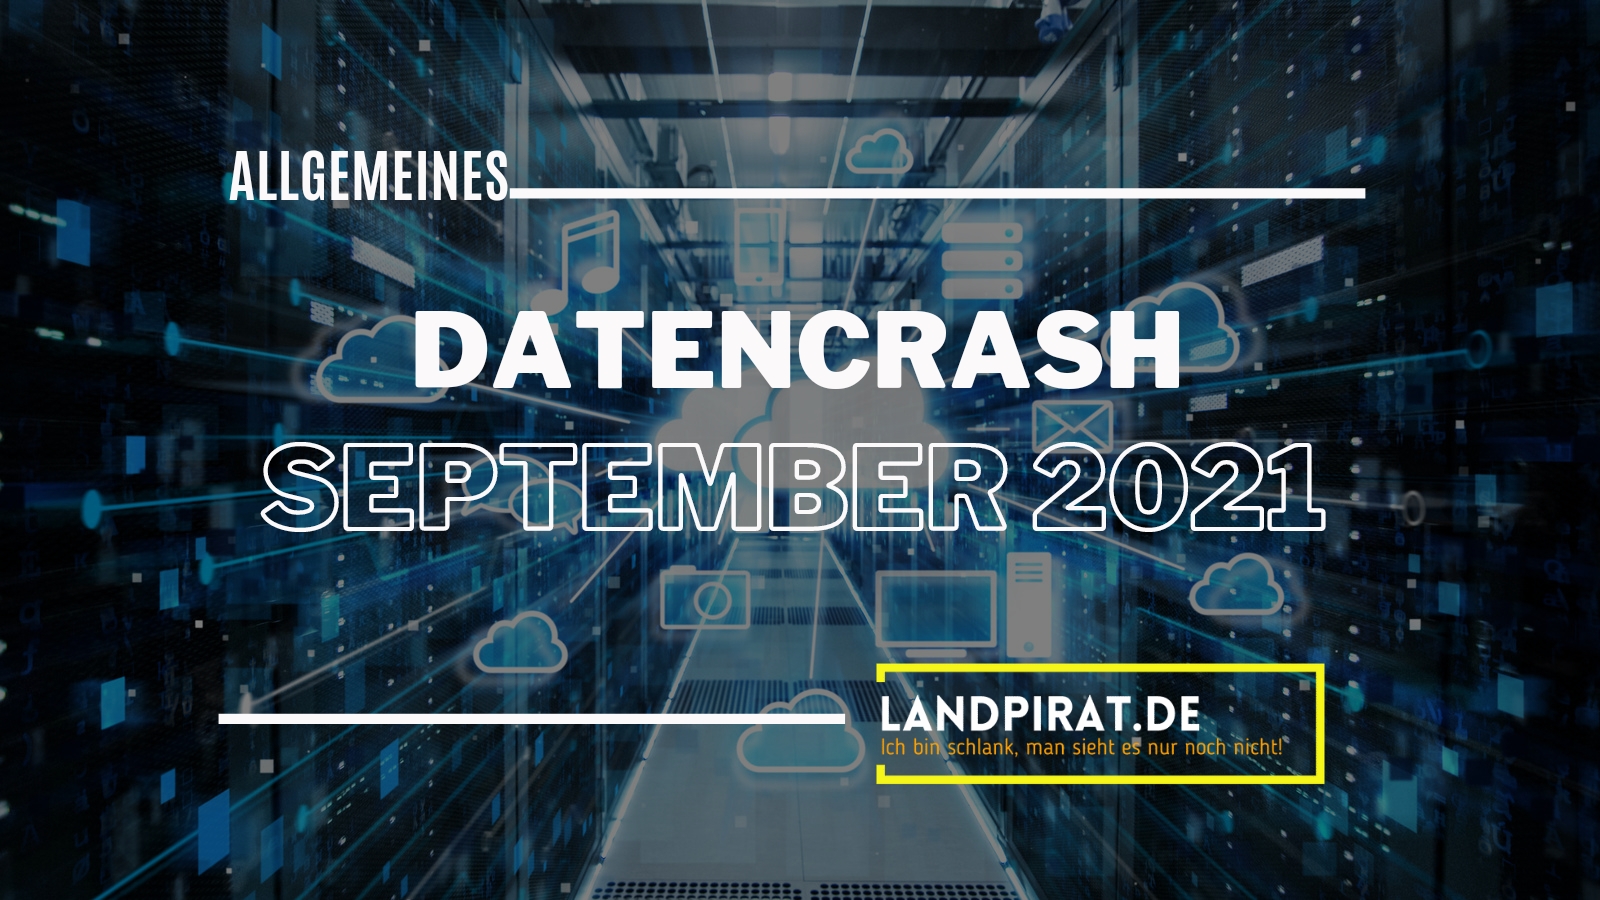 Großer Datencrash auf landpirat.de im September 2021